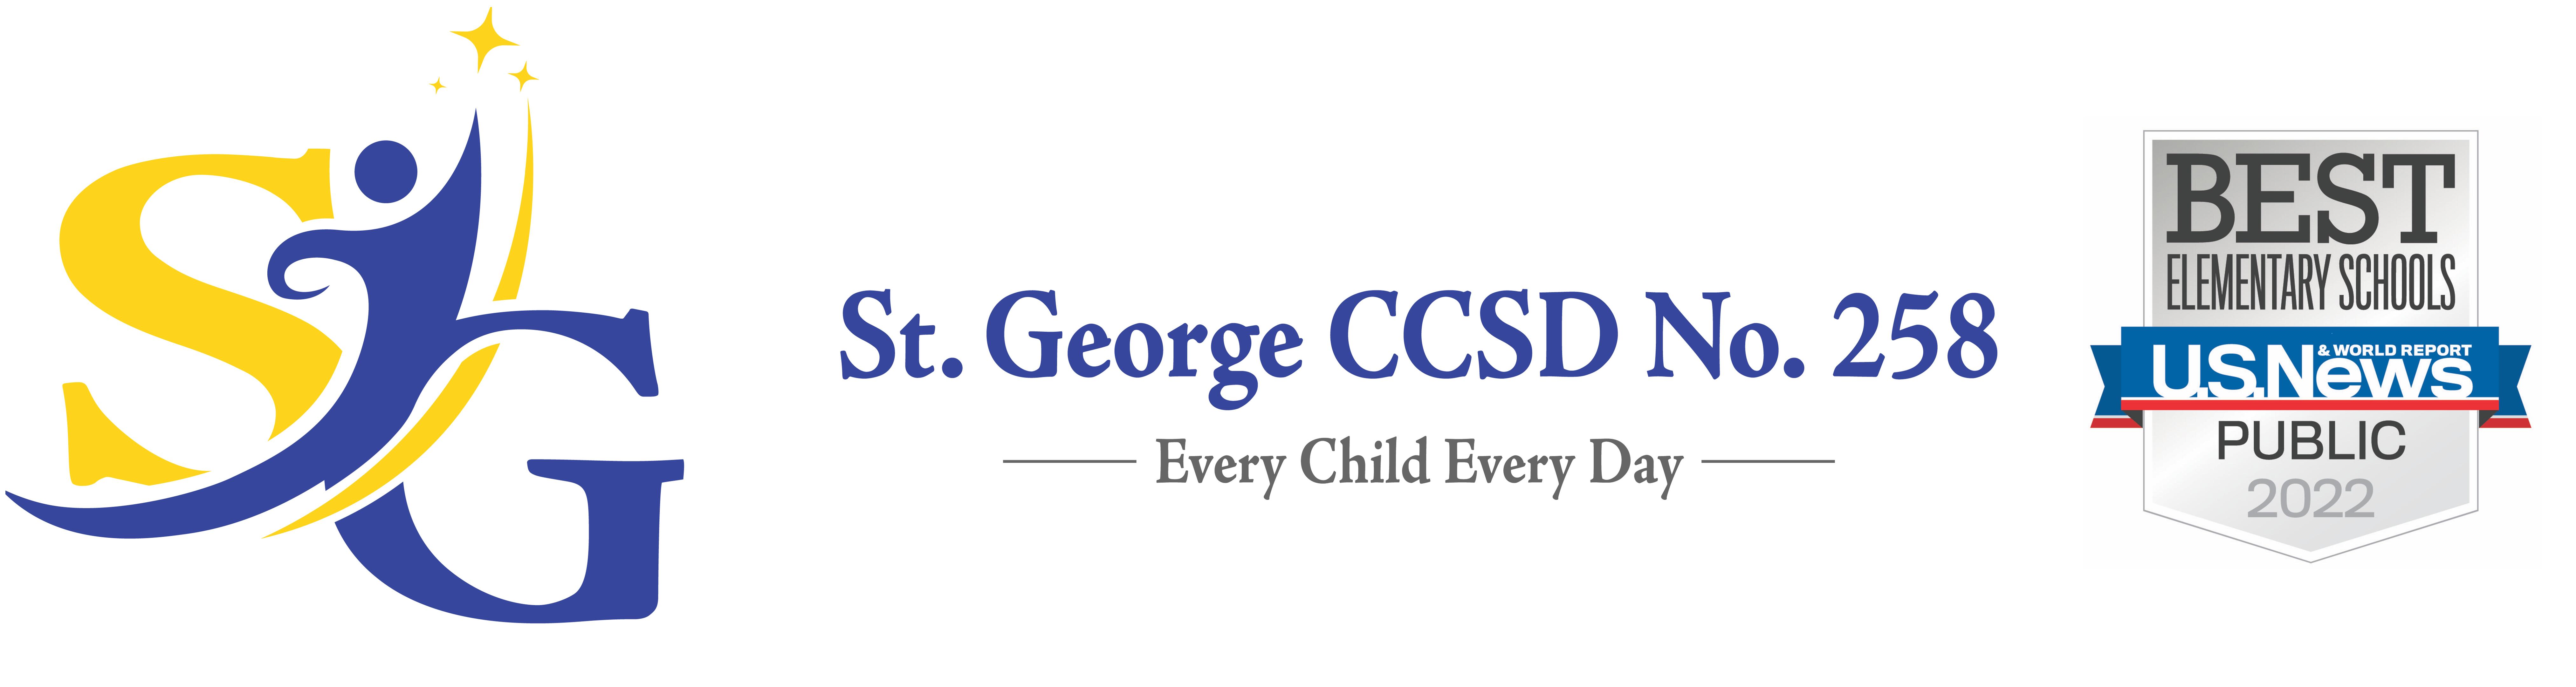 St. George CCSD258